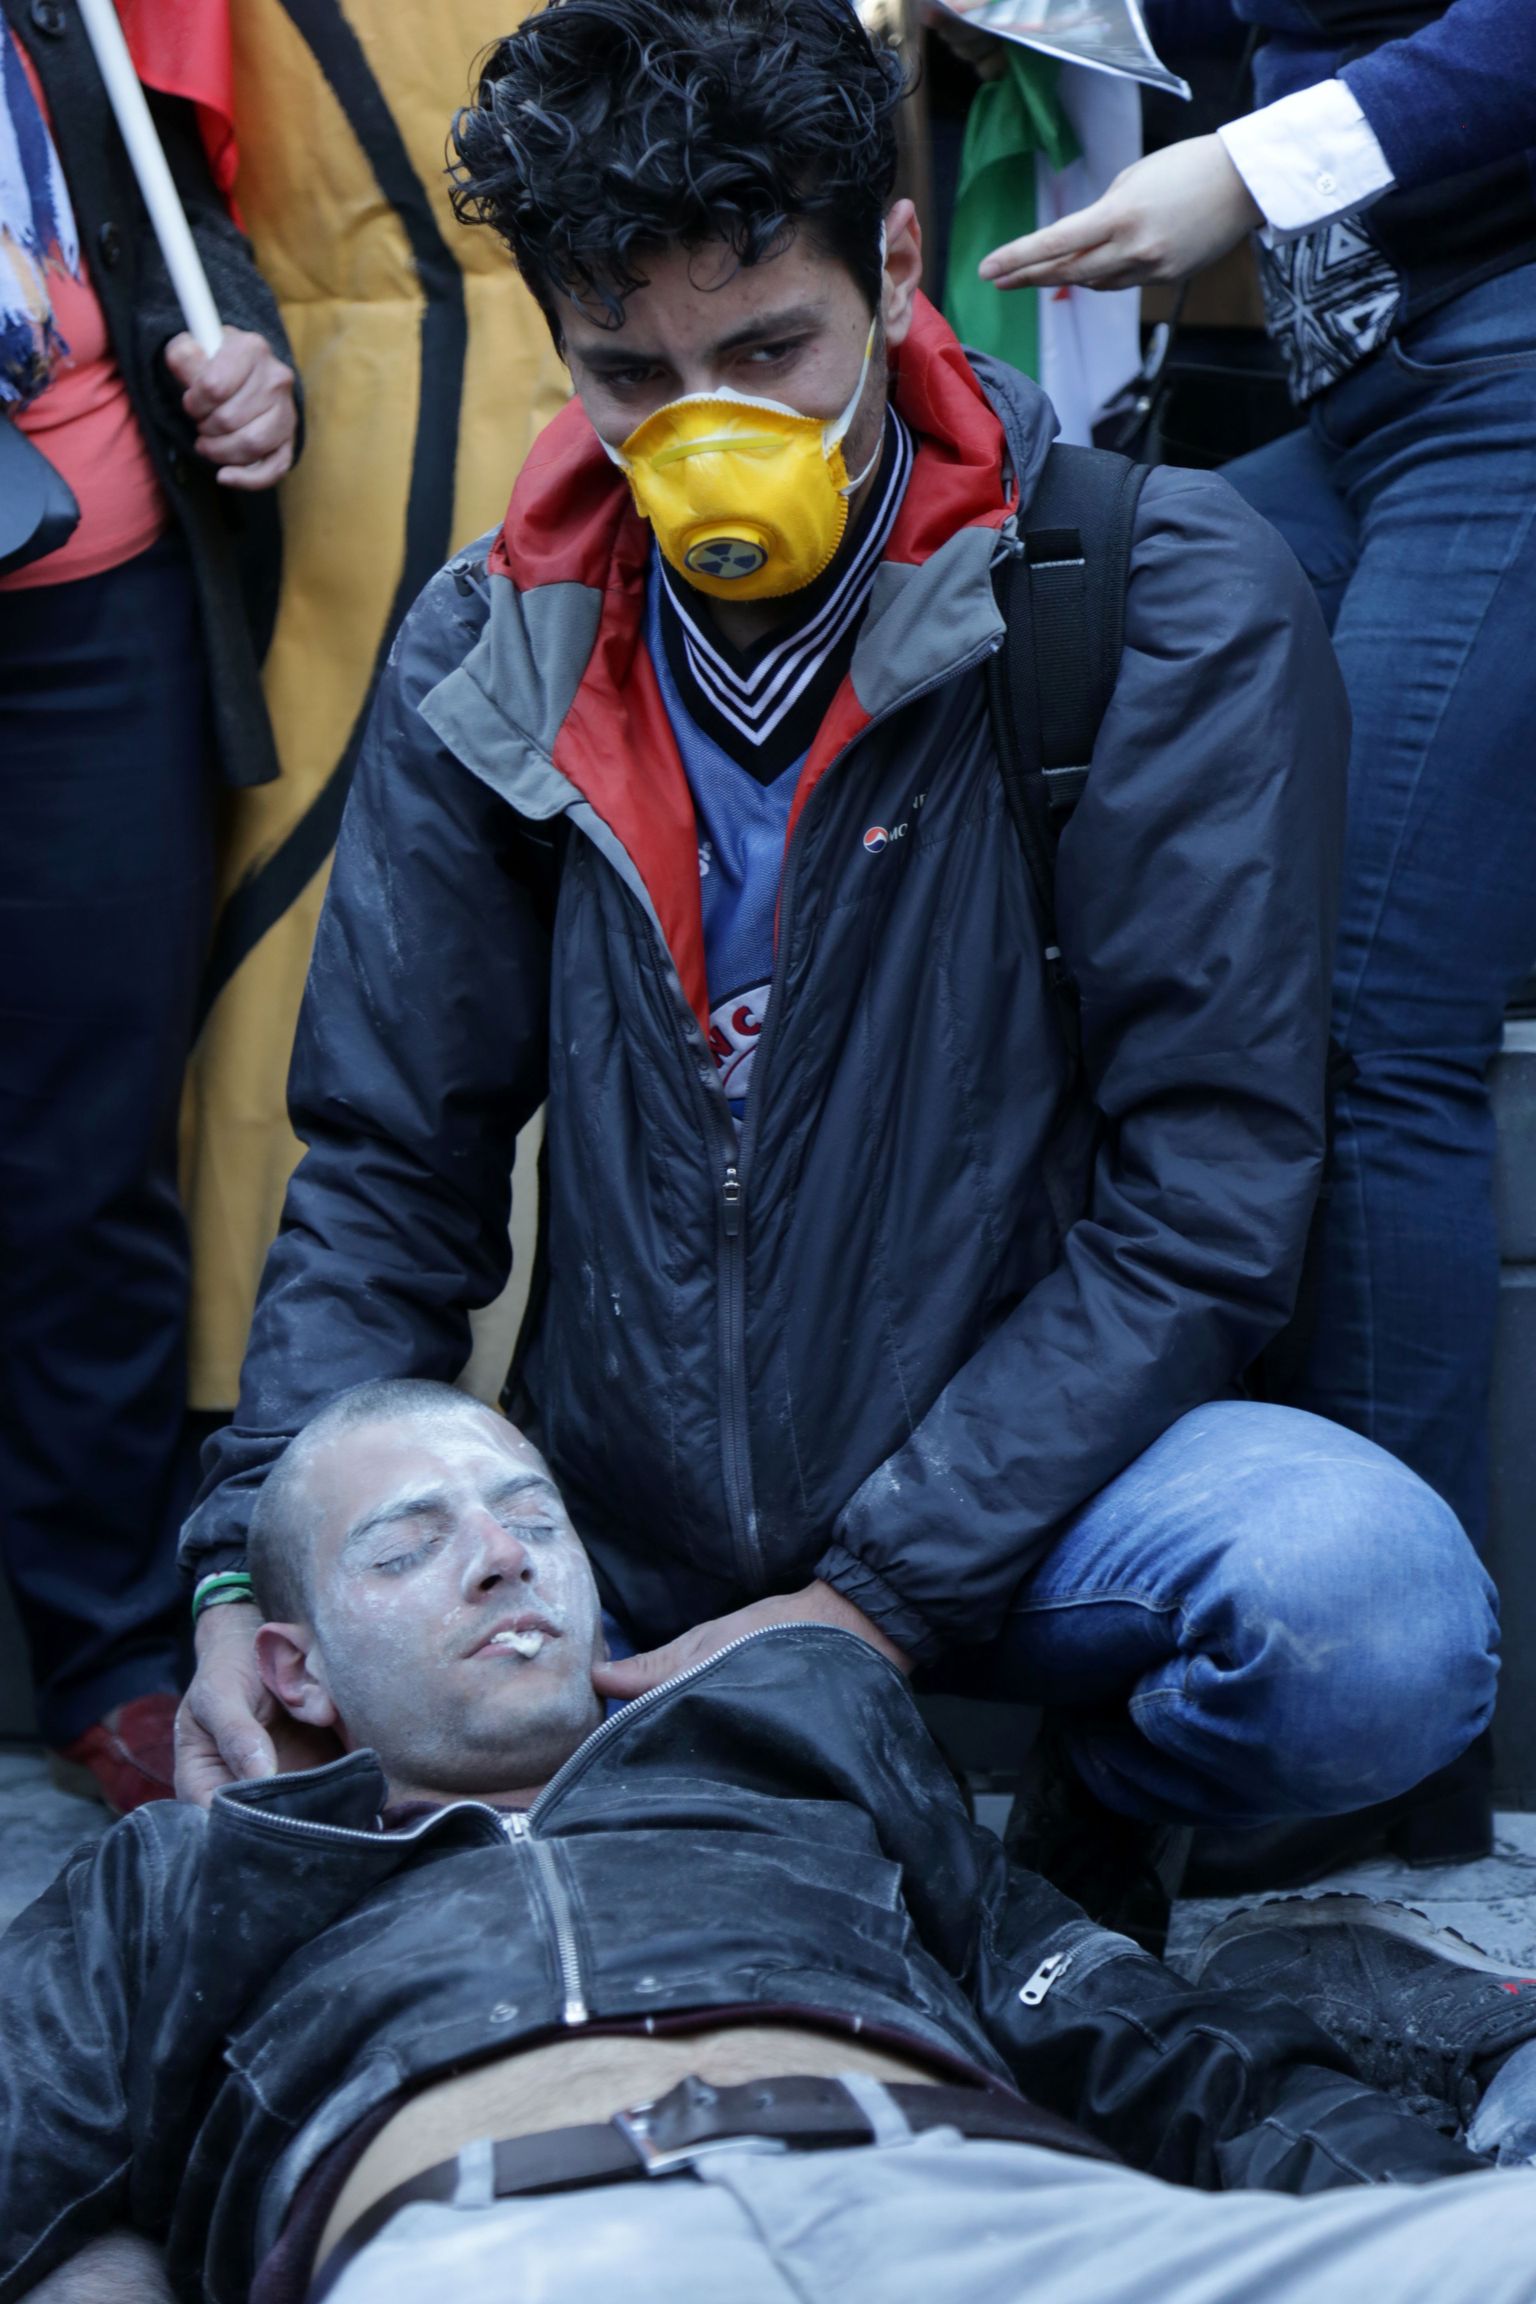 Üks neist neljapäeval Pariisis meelt avaldanutest kehastas Süüria keemiarünnaku ohvrit, teine aga päästetöötajat, kes ei saa enam kannatanut kuidagi aidata.